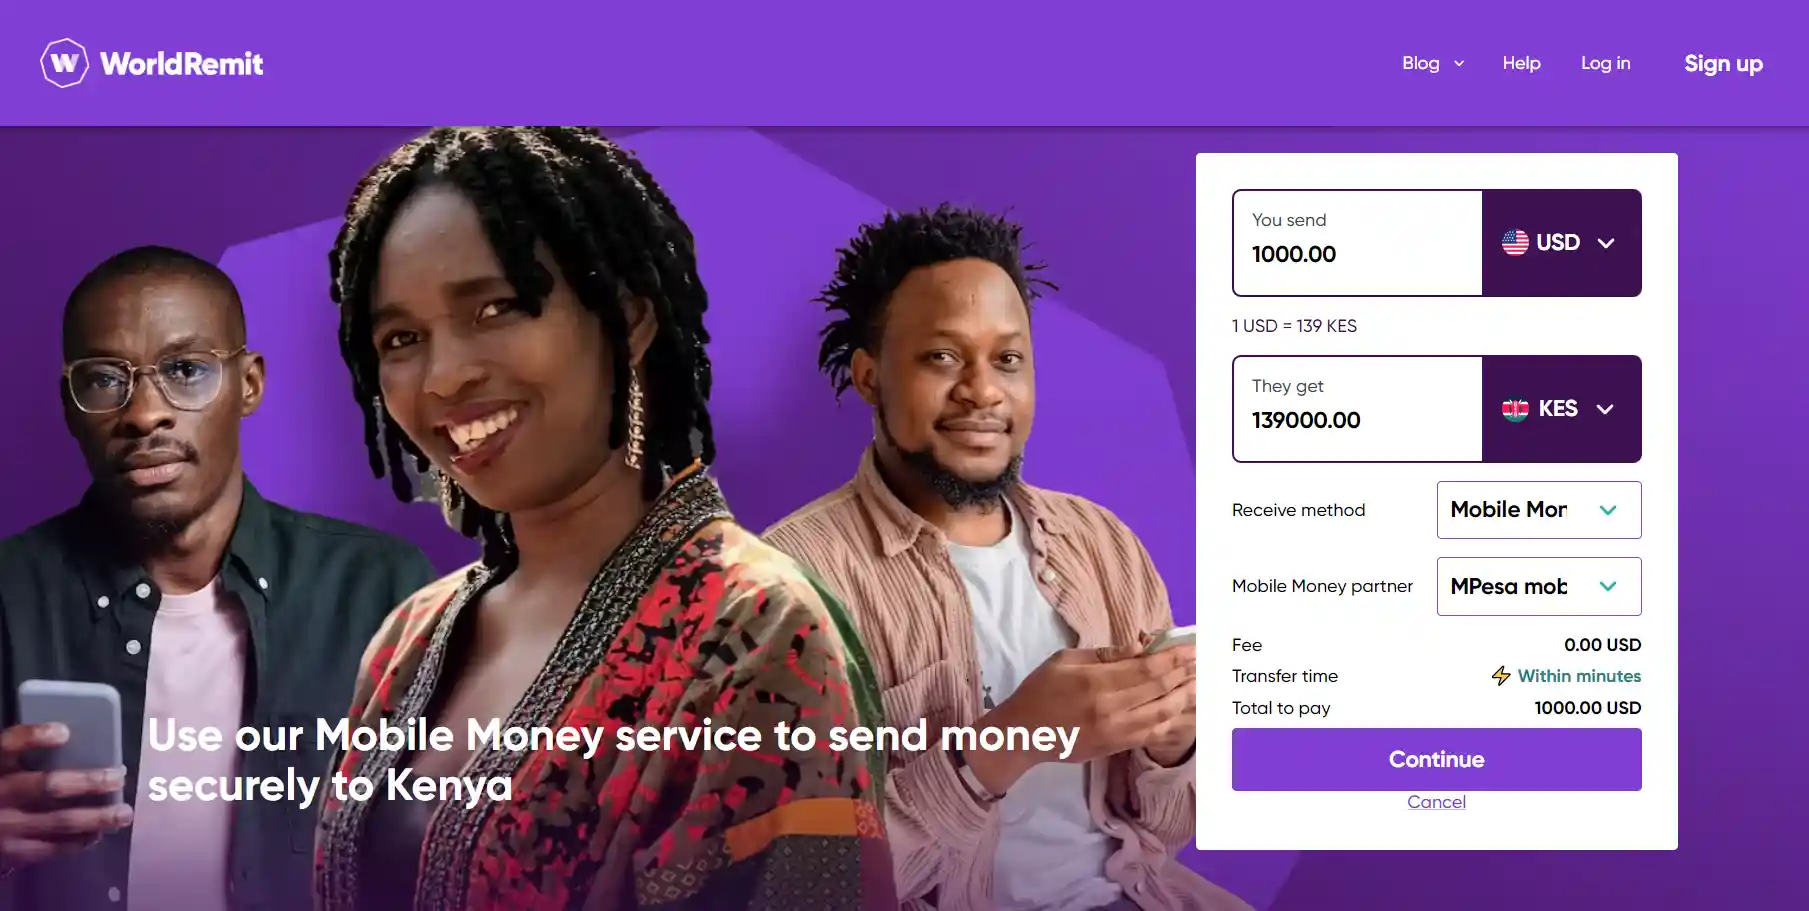 WorldRemit send Mpesa money to Kenya